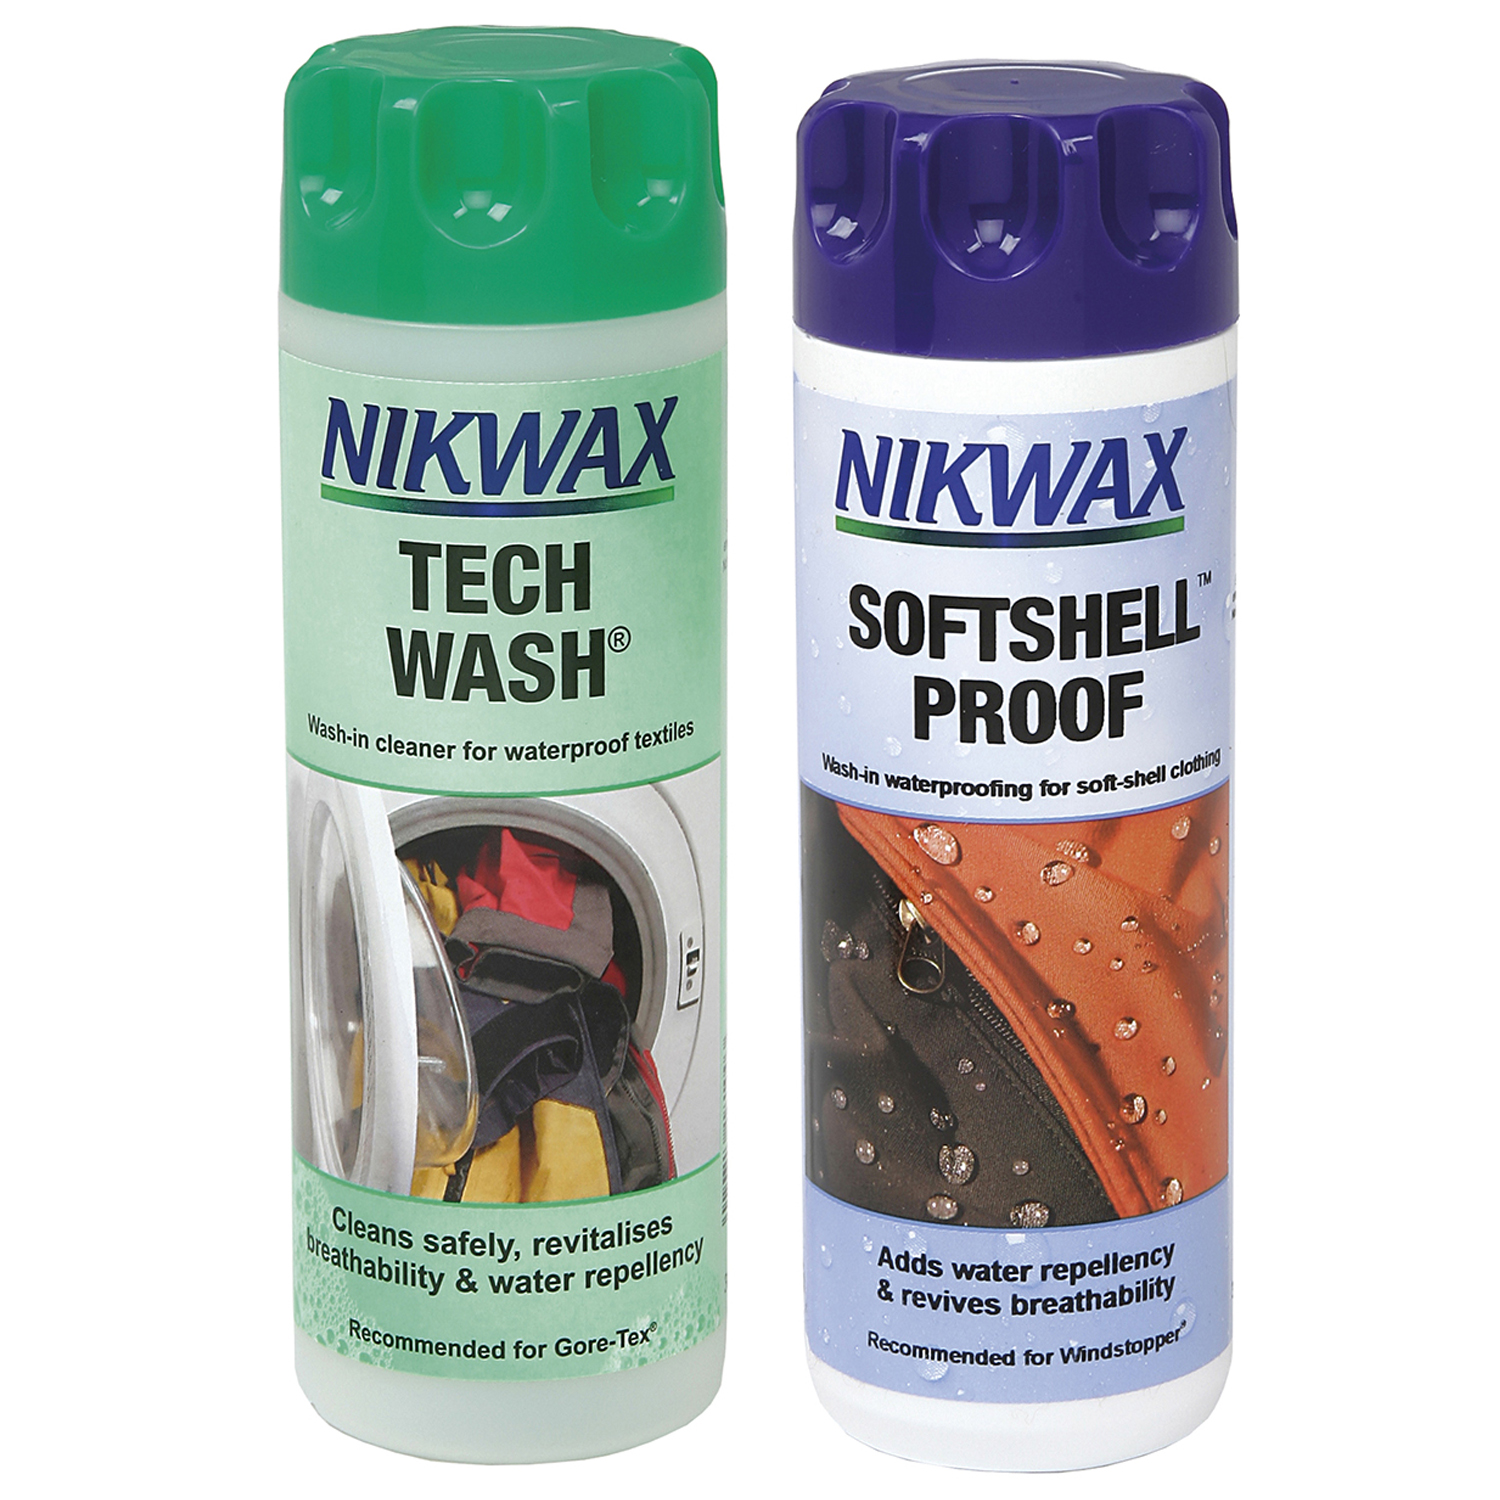 NIKWAX TECH WASH/SOFTSHELL PROOF TWIN PACK MINI MINI MINI X TWIN PACK